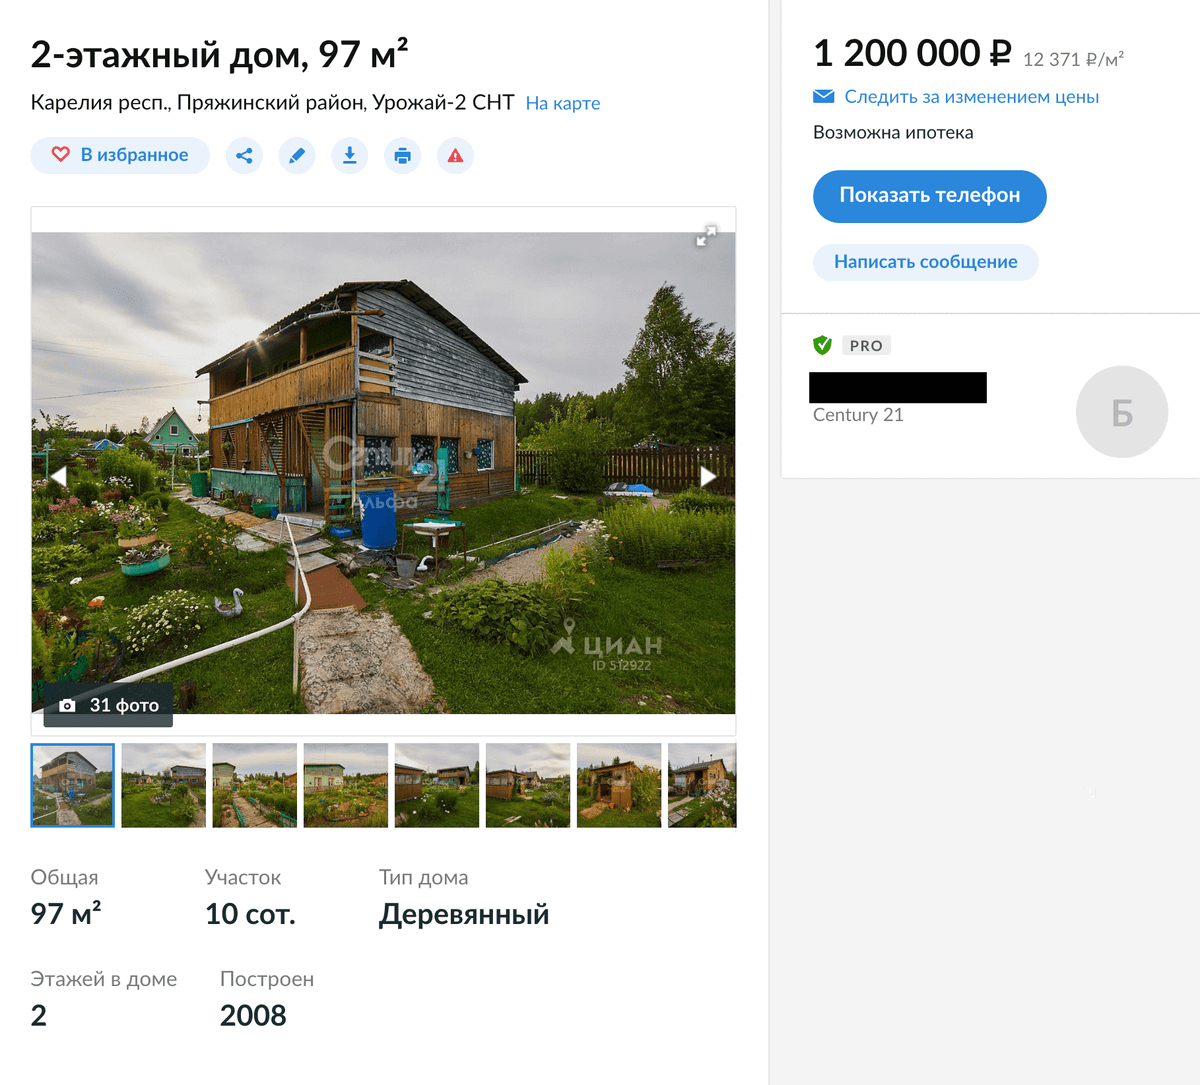 Этот дом рядом с Петрозаводском продают за 1,2 миллиона